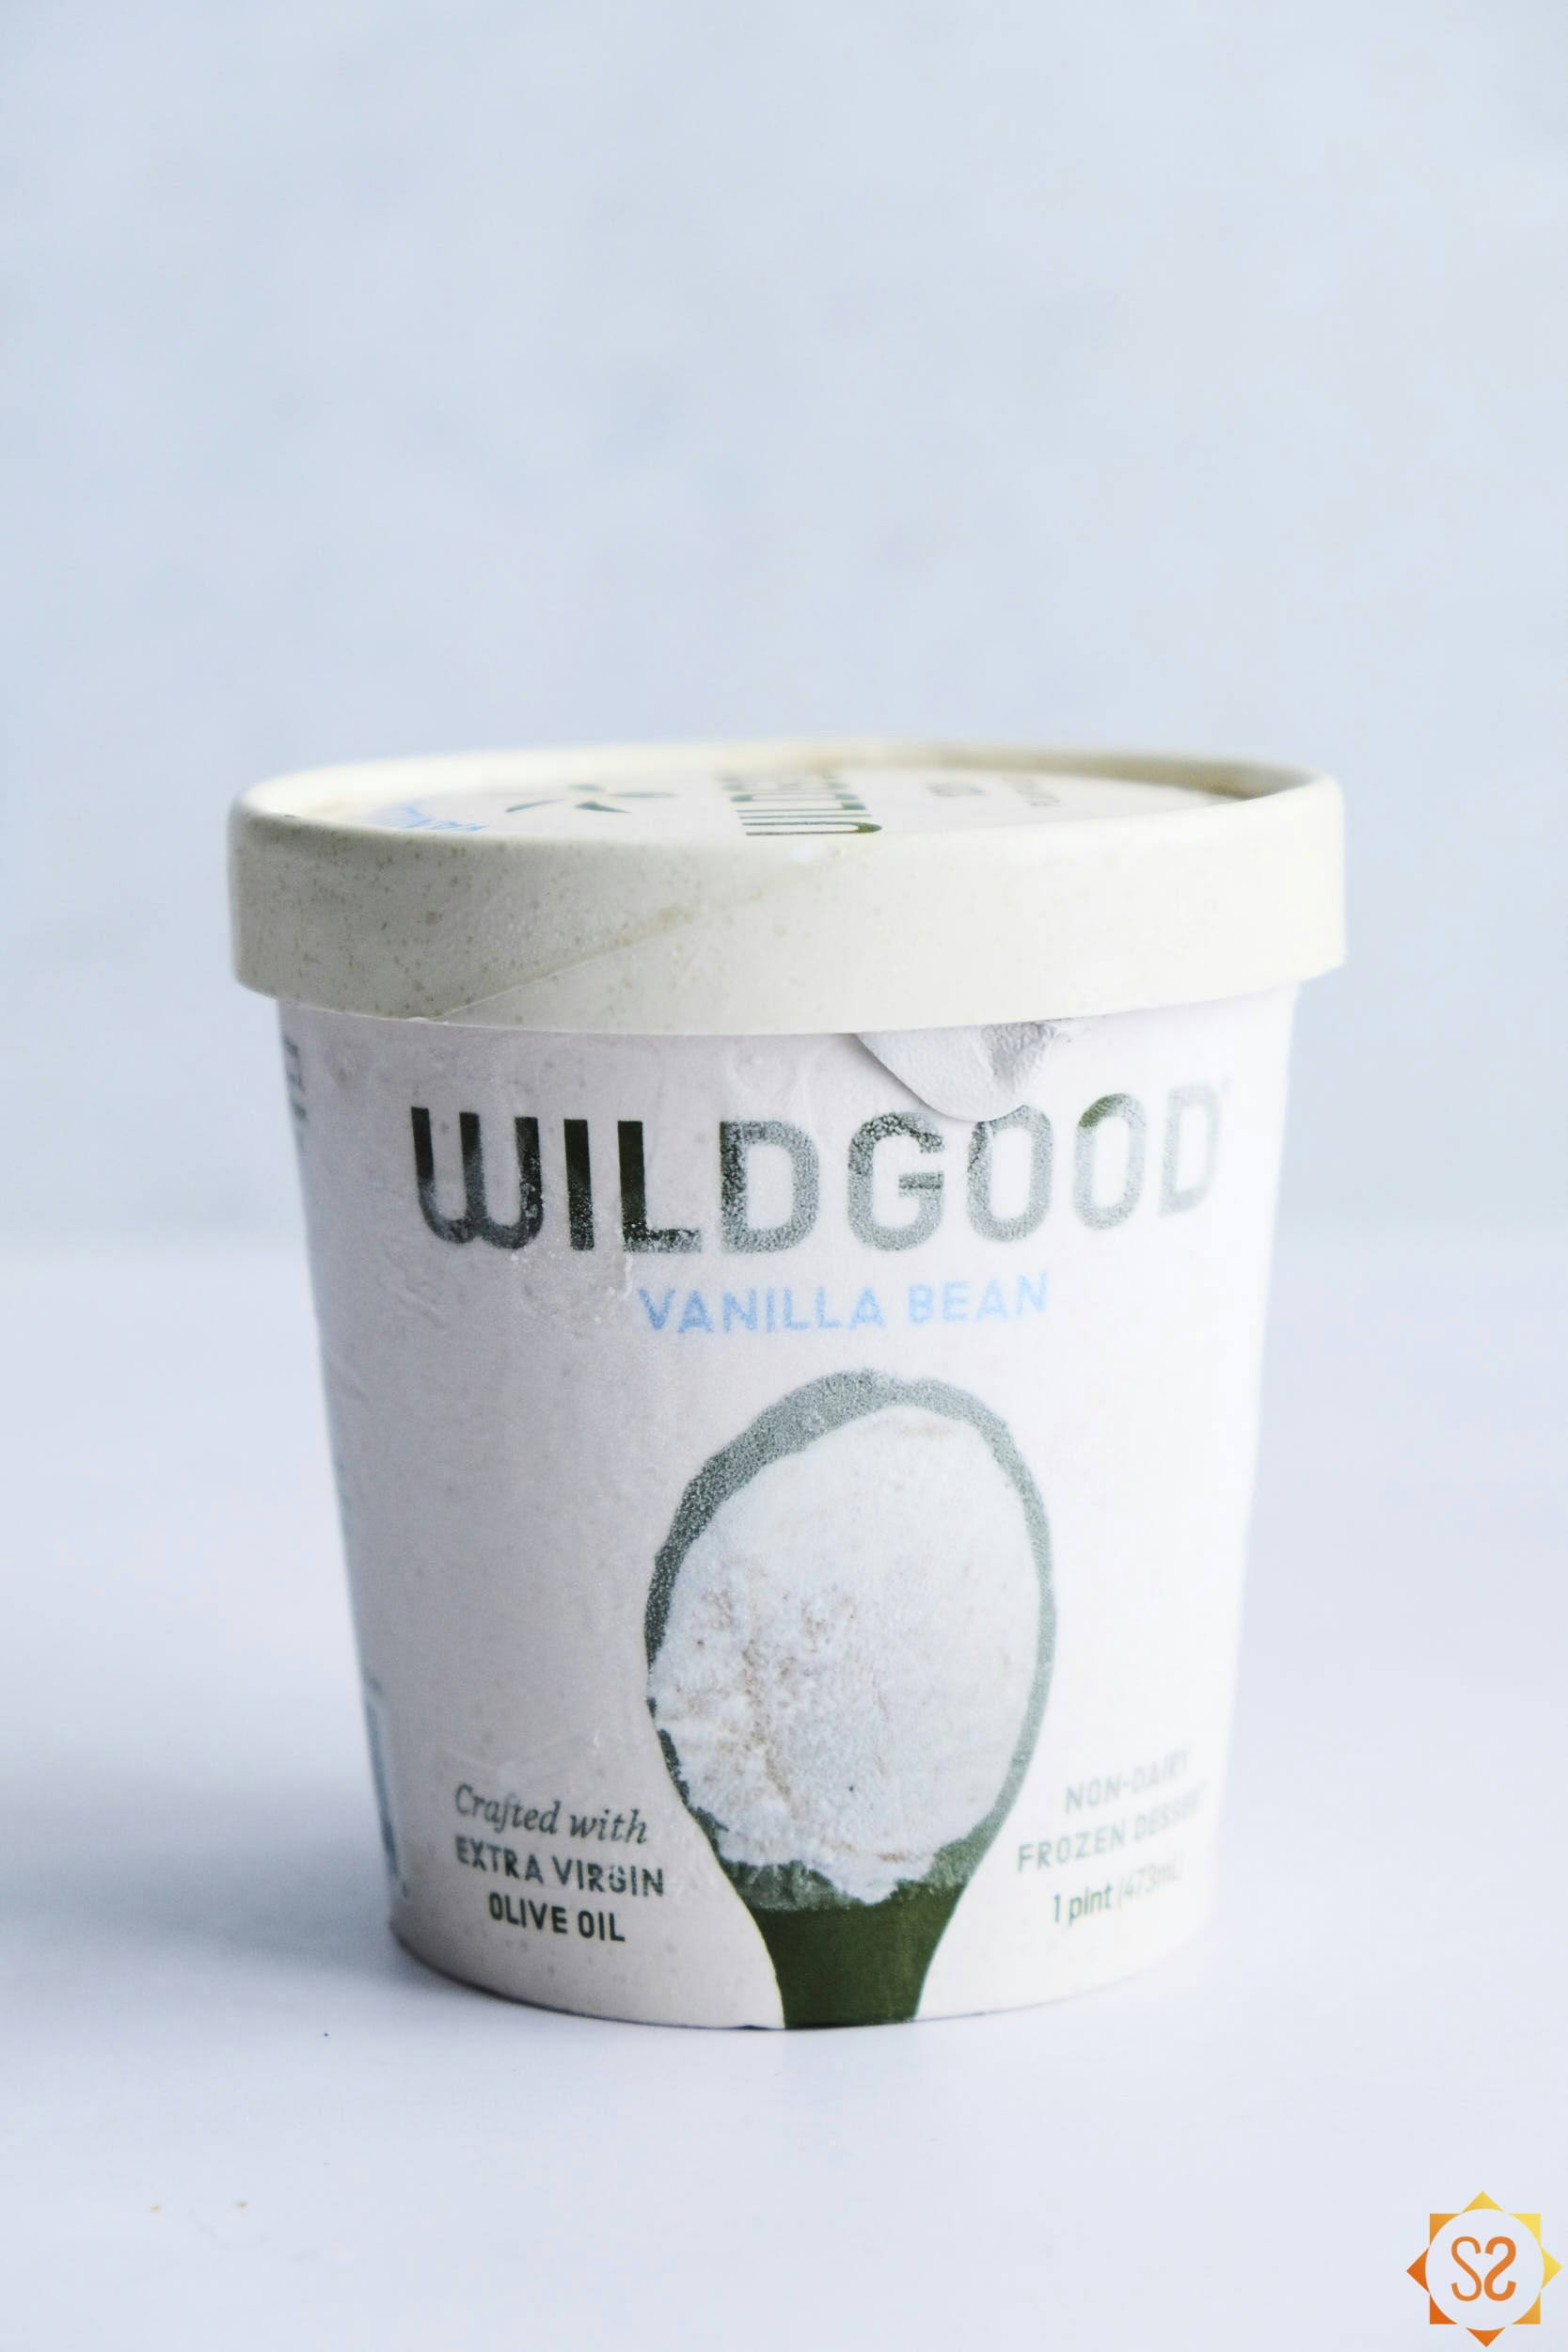 Wildgood Vanilla Bean Frozen Dessert Pint